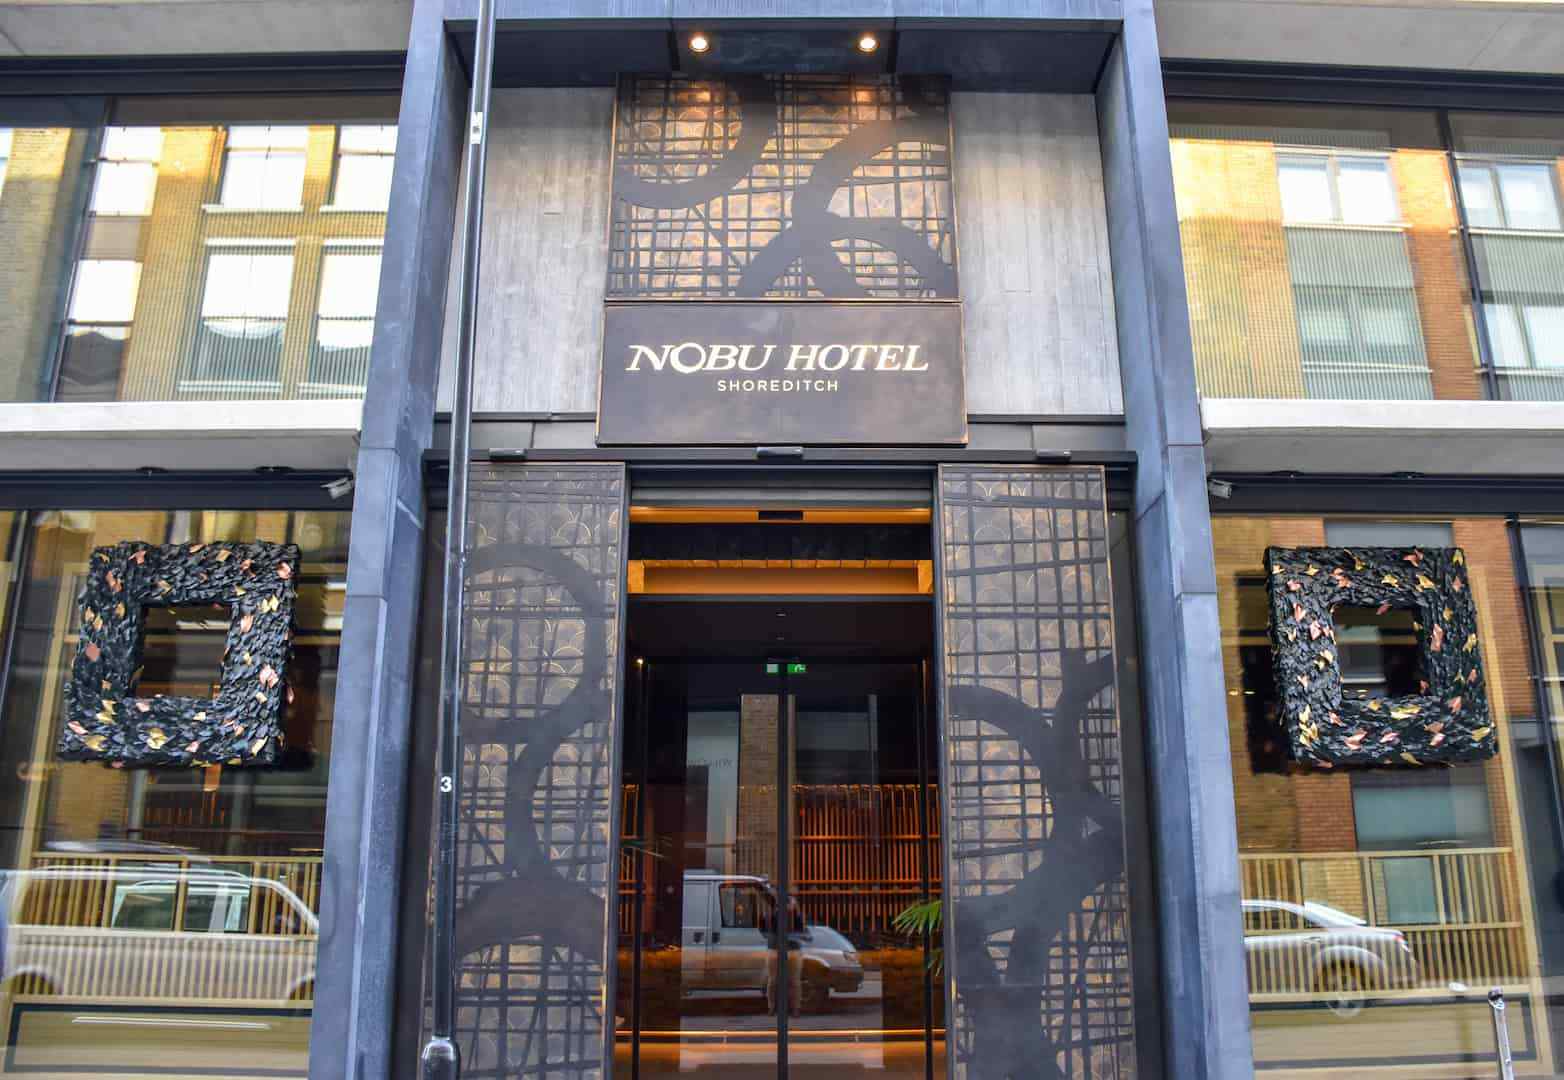 Nobu hotel front photo